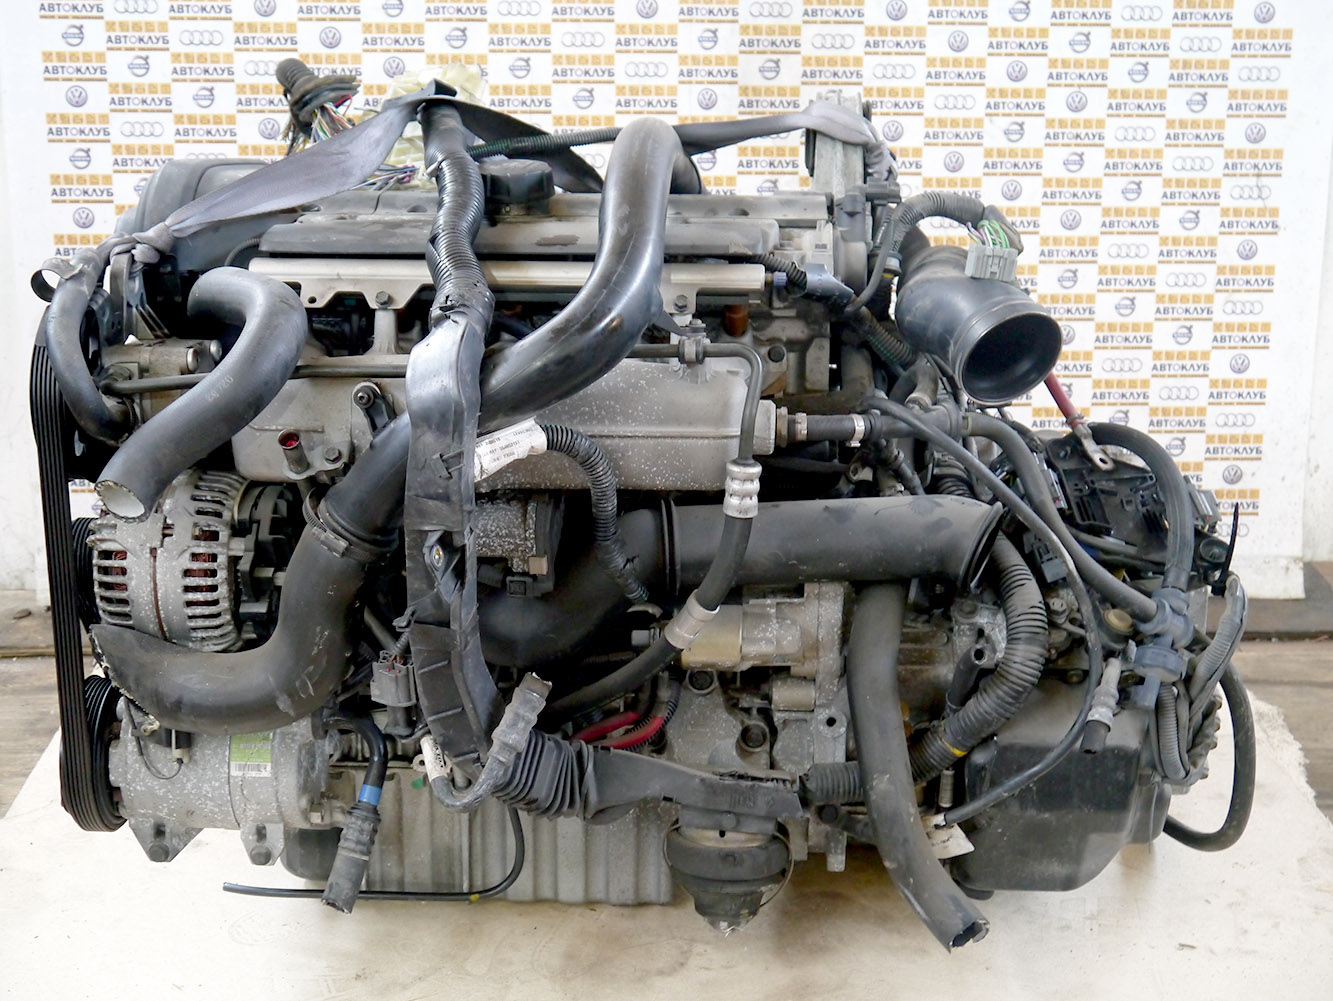 Купить двигатель хс90. Volvo b5254t. B5254t2 мотор. Двигатель Вольво хс70 2.4 дизель. Двигателя на Вольво ХС-70.